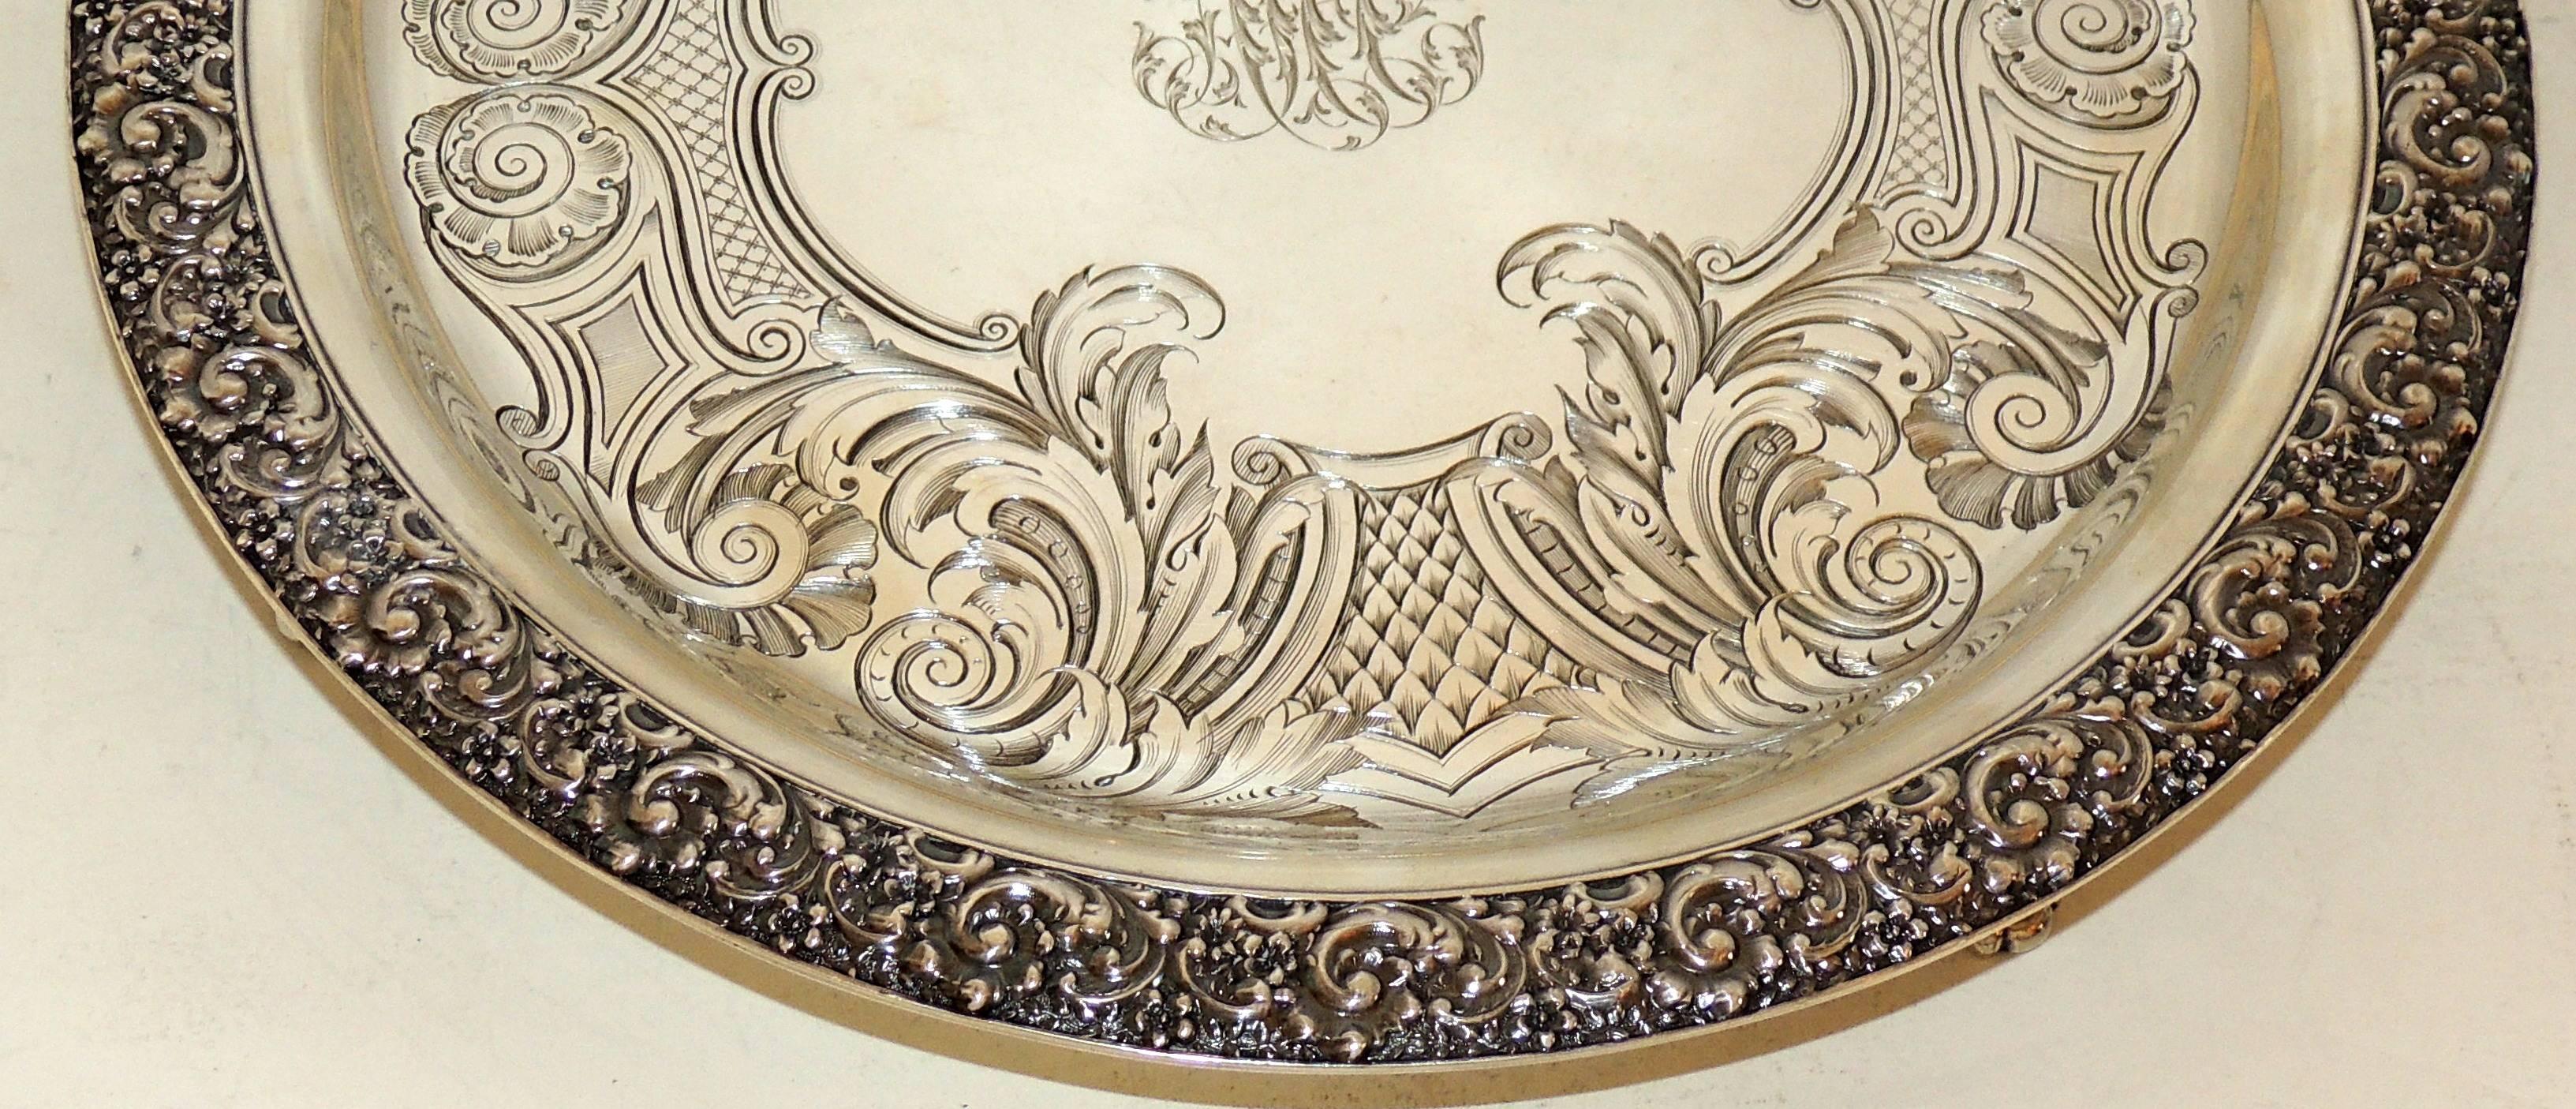 Un merveilleux plateau de service ou centre de table en argent sterling Tiffany finement gravé, rond et avec des pieds.